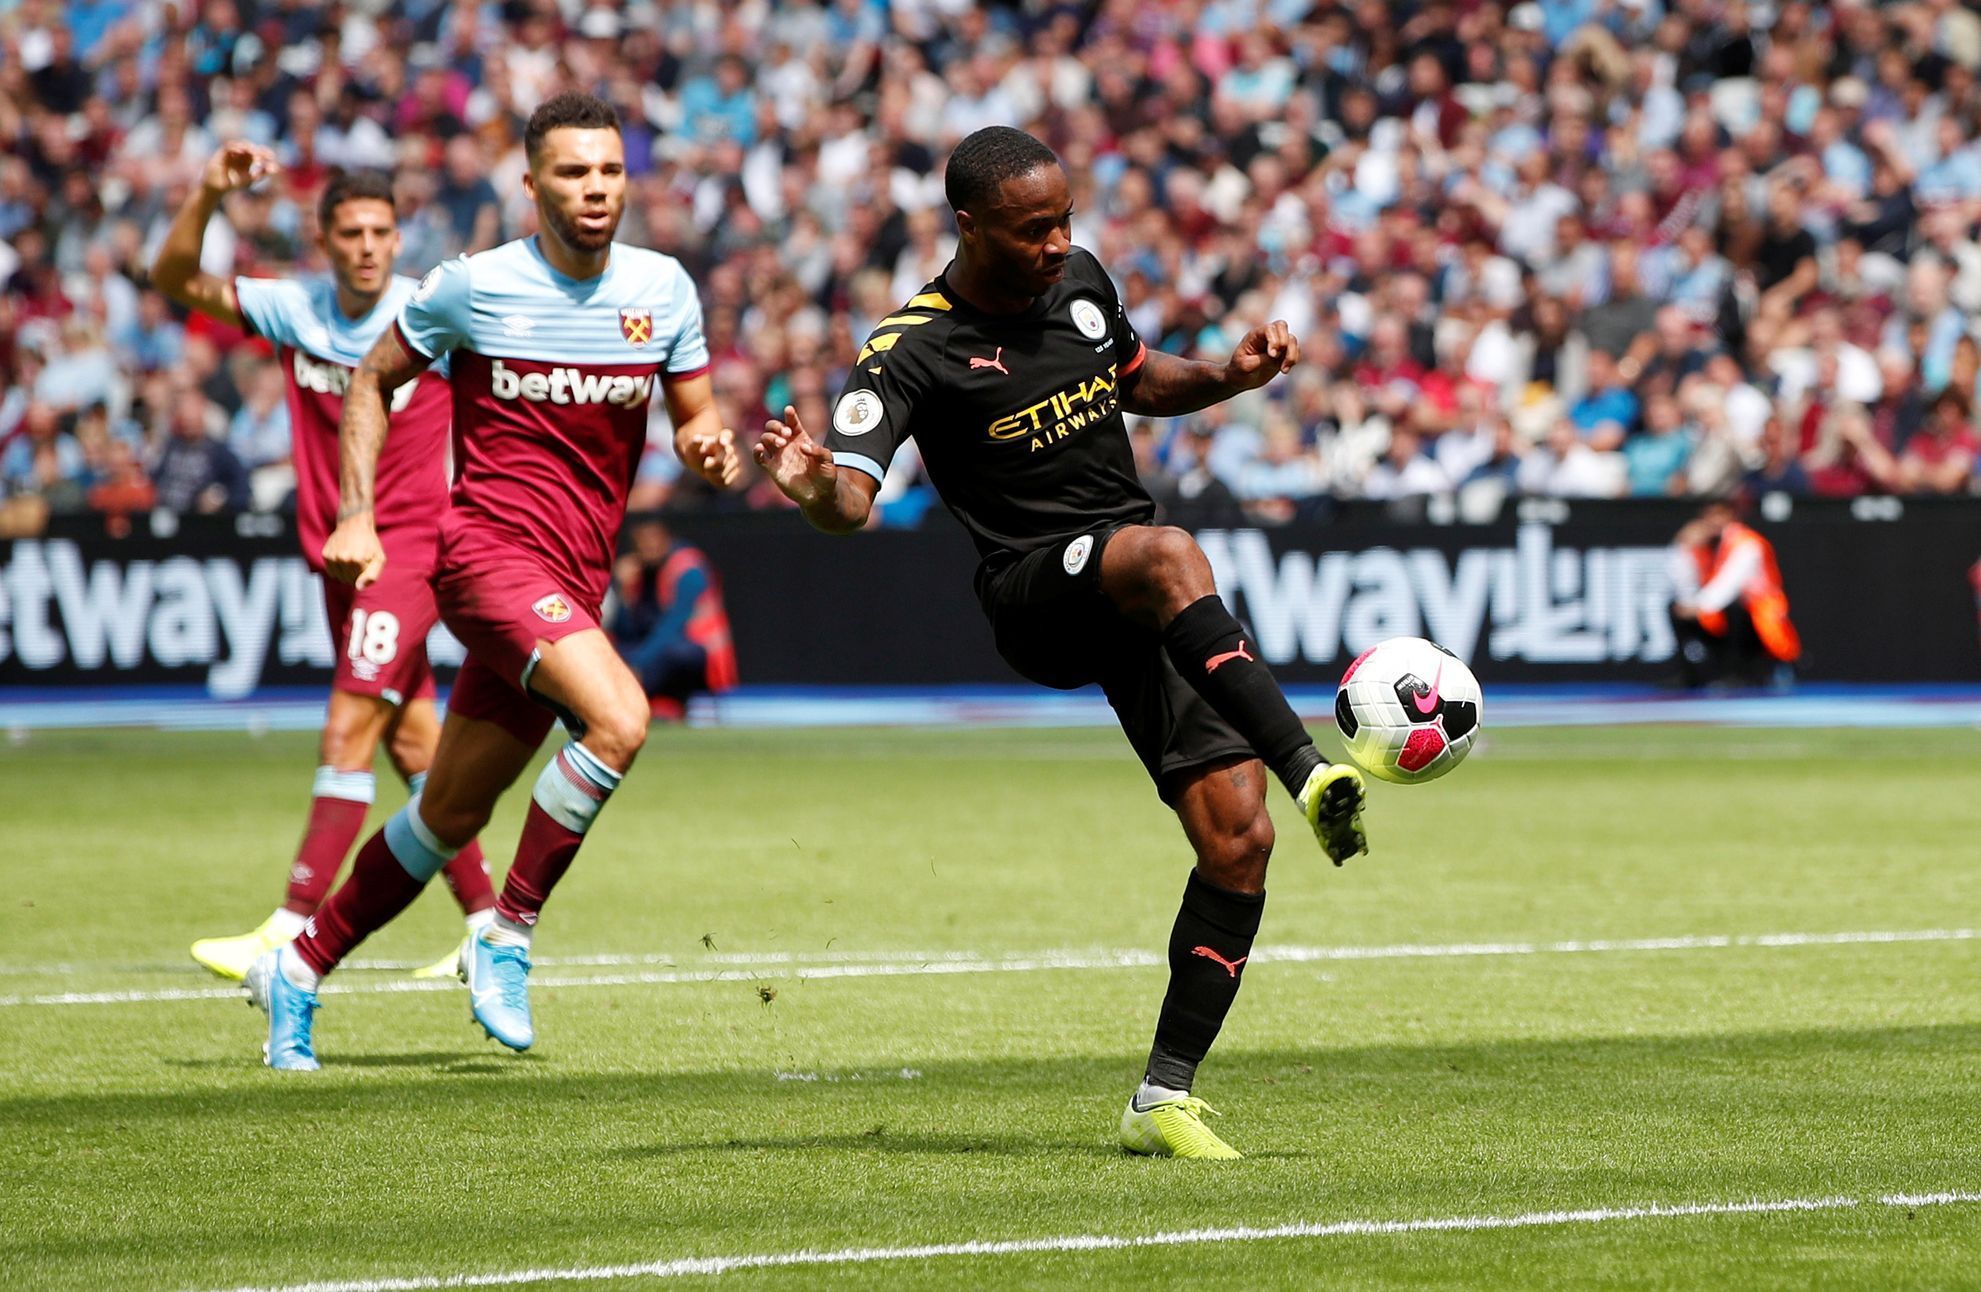 Raheem Sterling střílí jeden ze svých tří gólů, kterými pomohl Manchesteru City k vysoké výhře 5:0 na půdě West Hamu